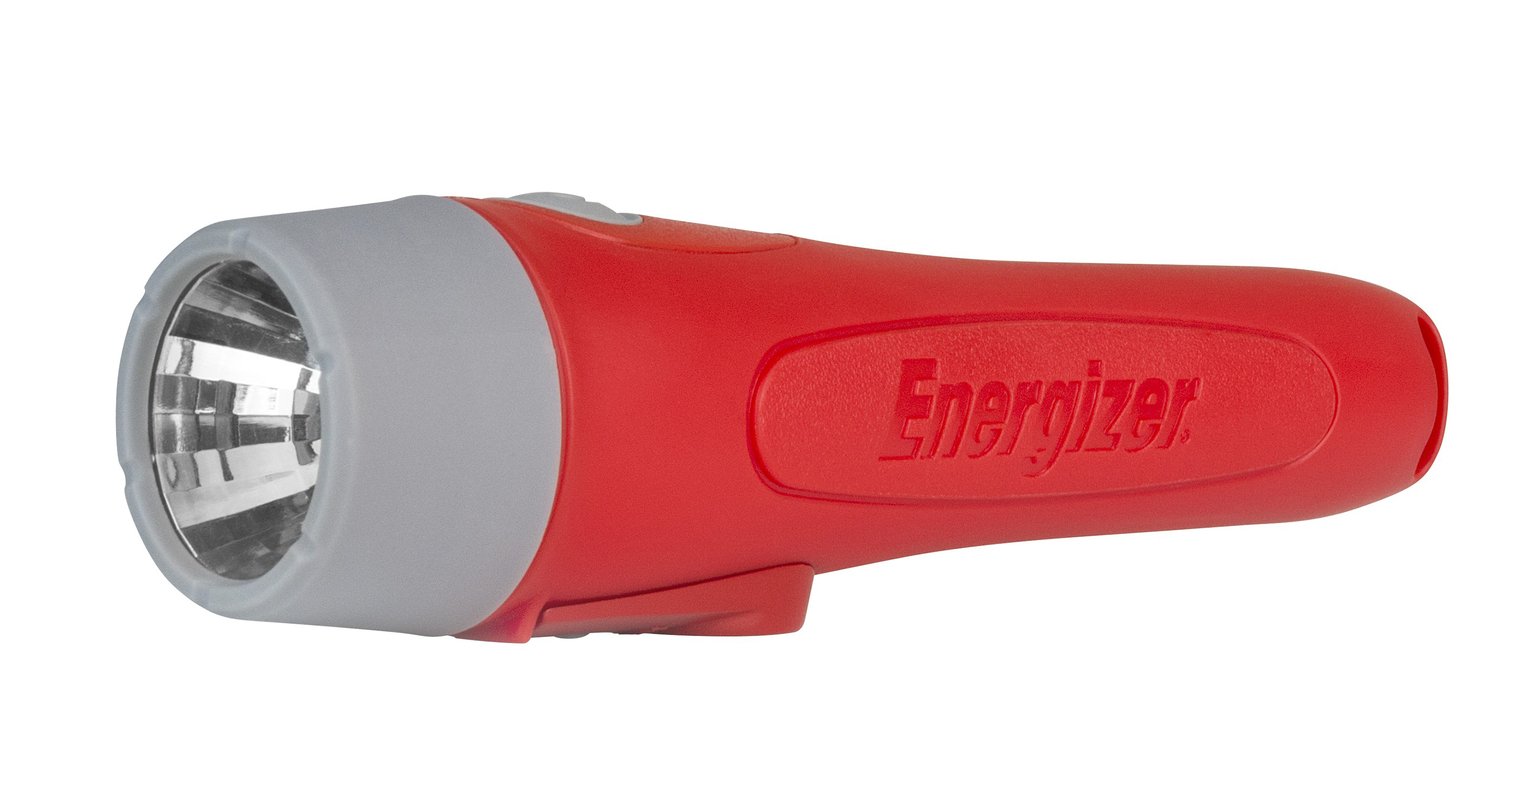 Energizer 50 Lumen Magnet Metal Torch Review